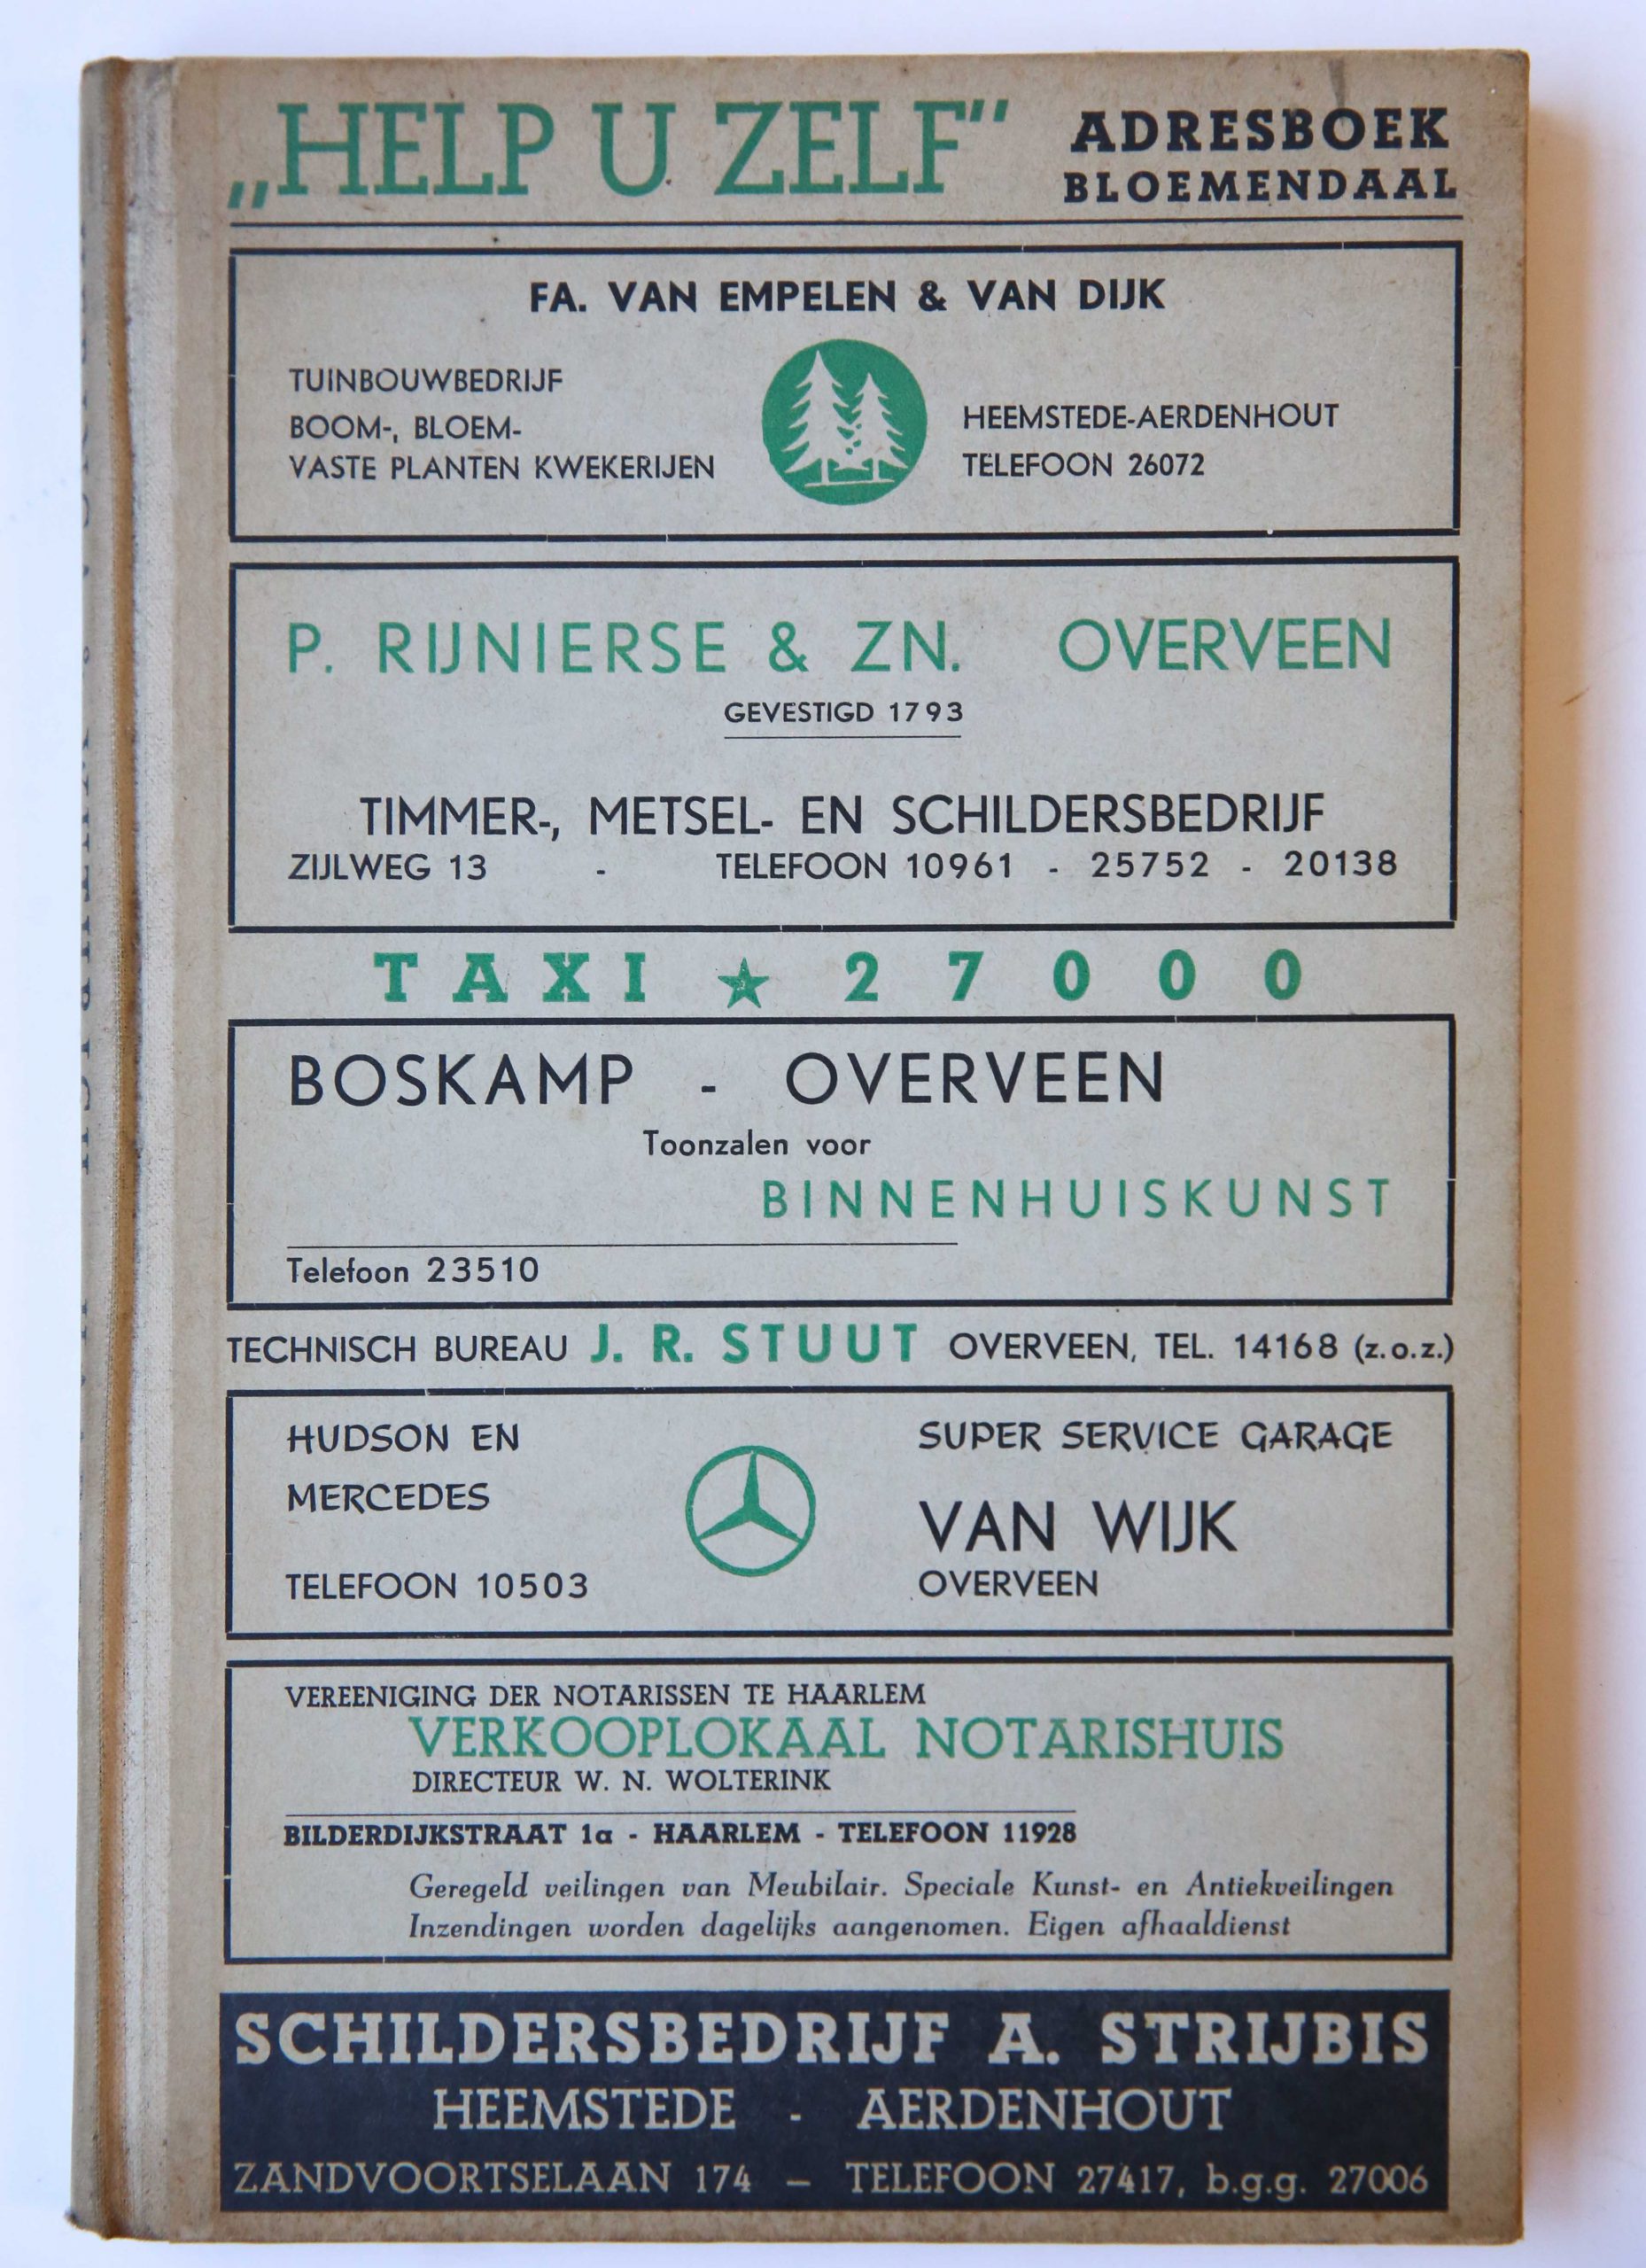 Help U Zelf / Adresboek van Bloemendaal, bijgewerkt tot 1 juni 1951, G. Eikelenboom & Zoon, Haarlem, 143 pp.